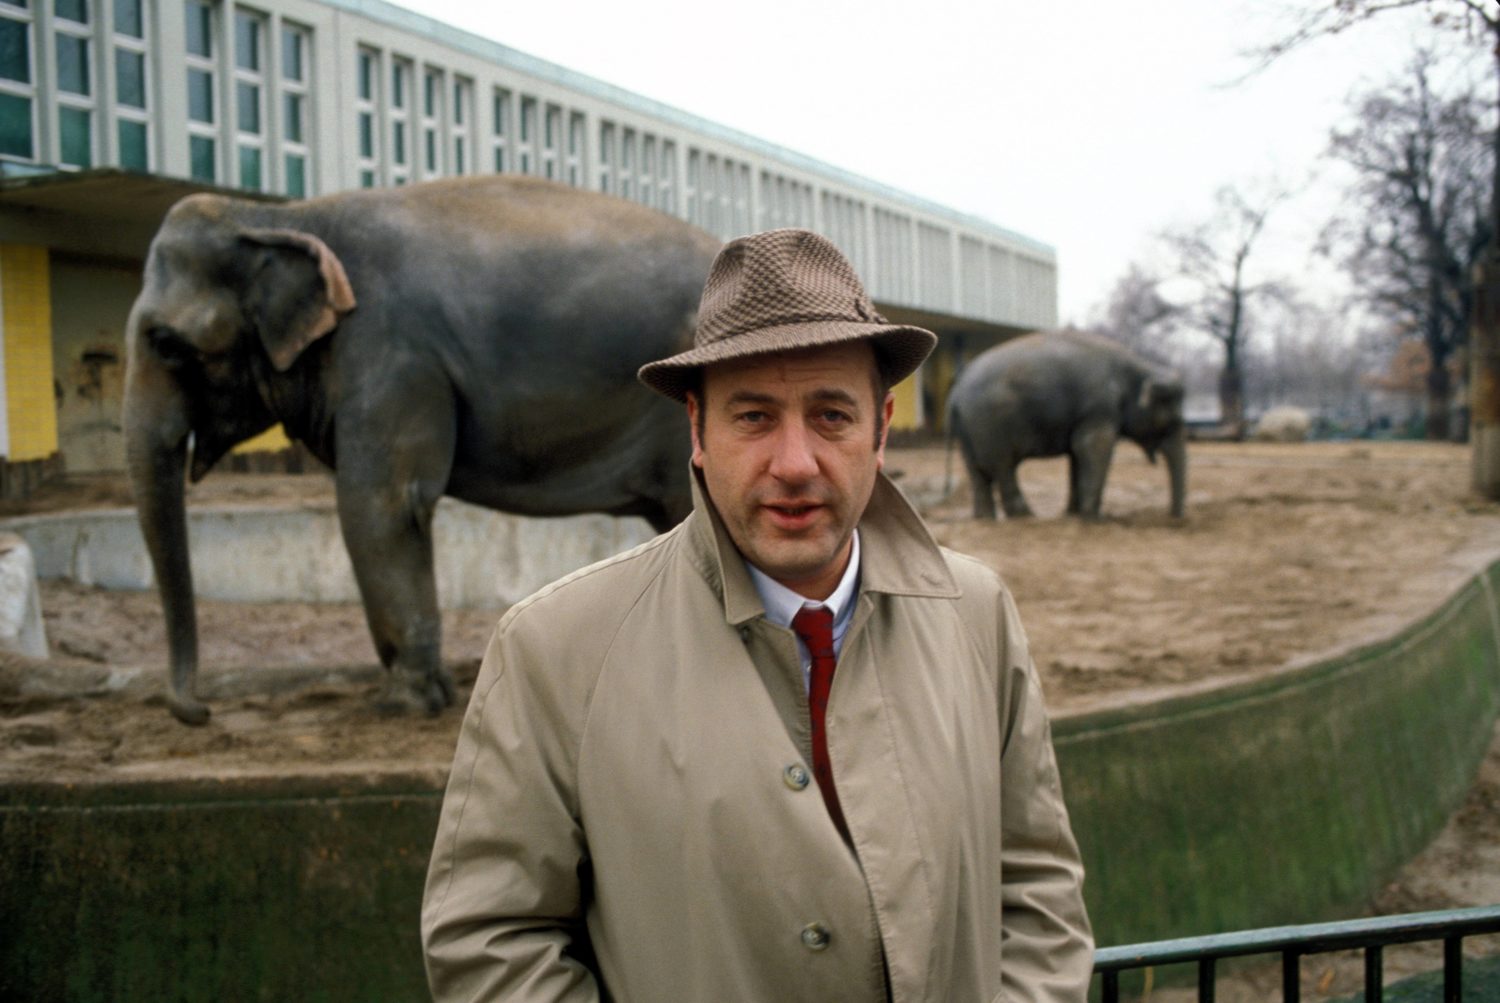 Schauspieler und Sänger Manfred Krug besucht die Elefanten in Berliner Zoo, Oktober 1985.